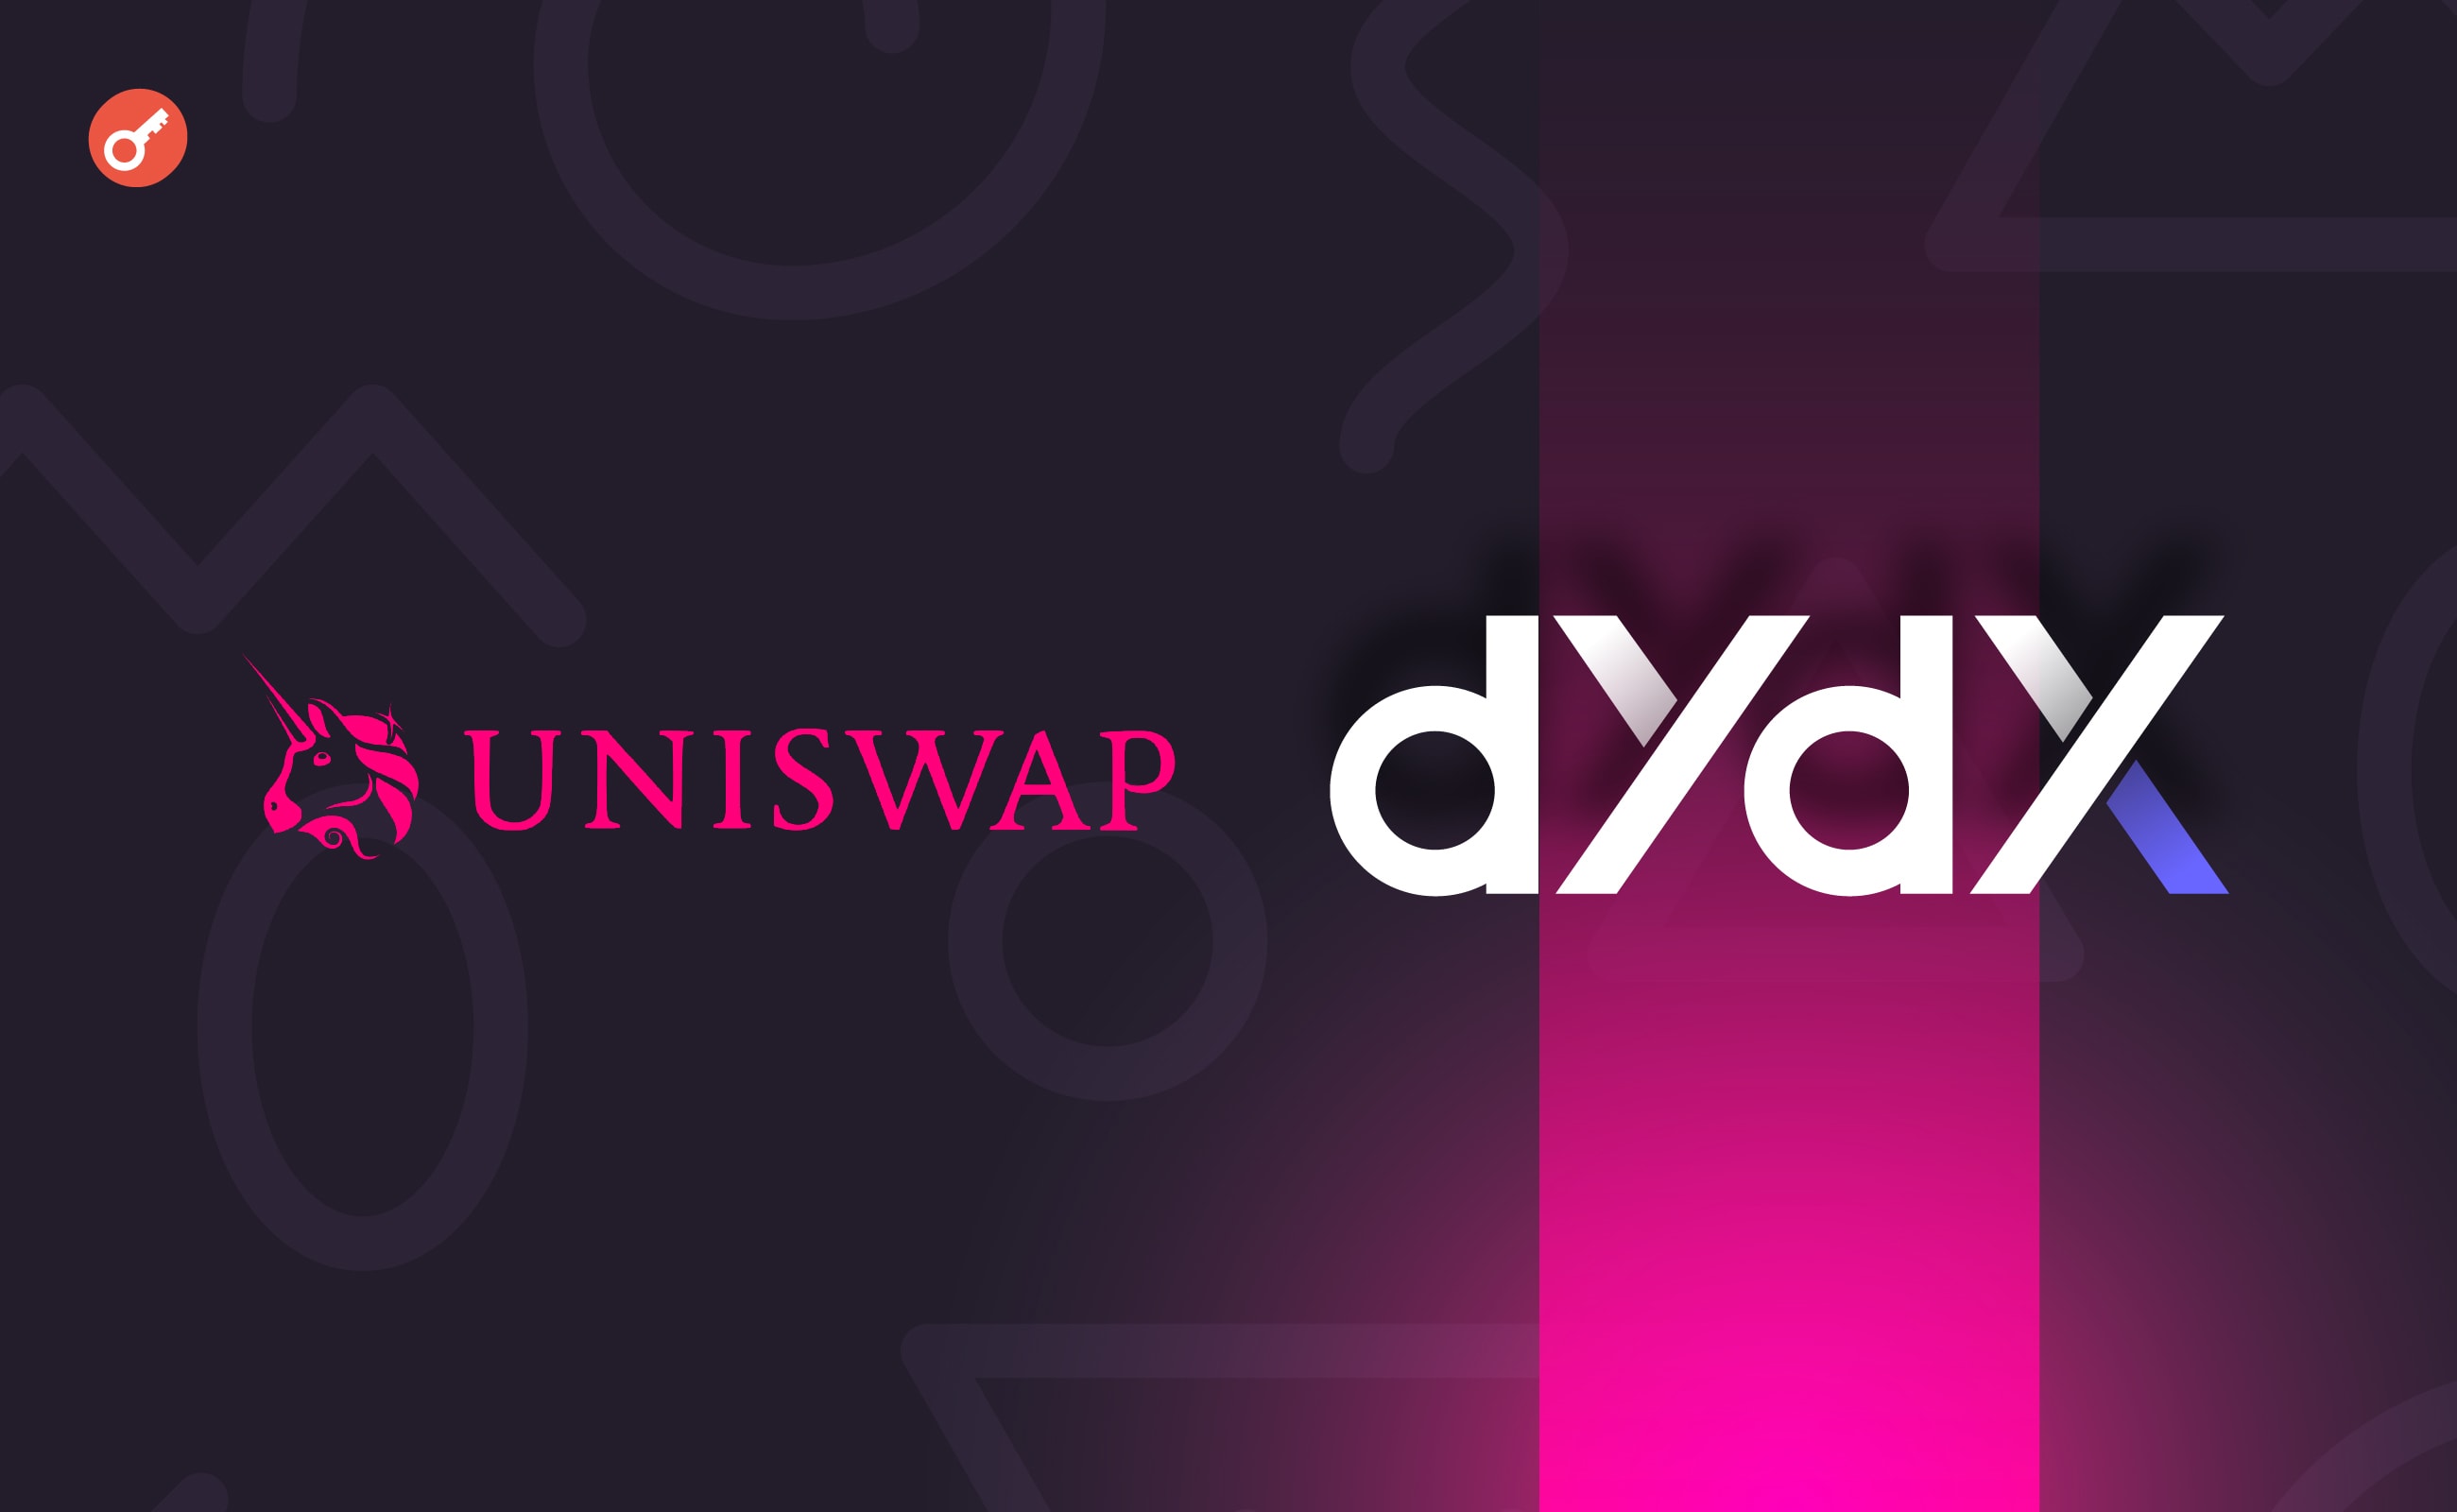 dYdX обошла Uniswap по дневным объемам торгов. Заглавный коллаж новости.